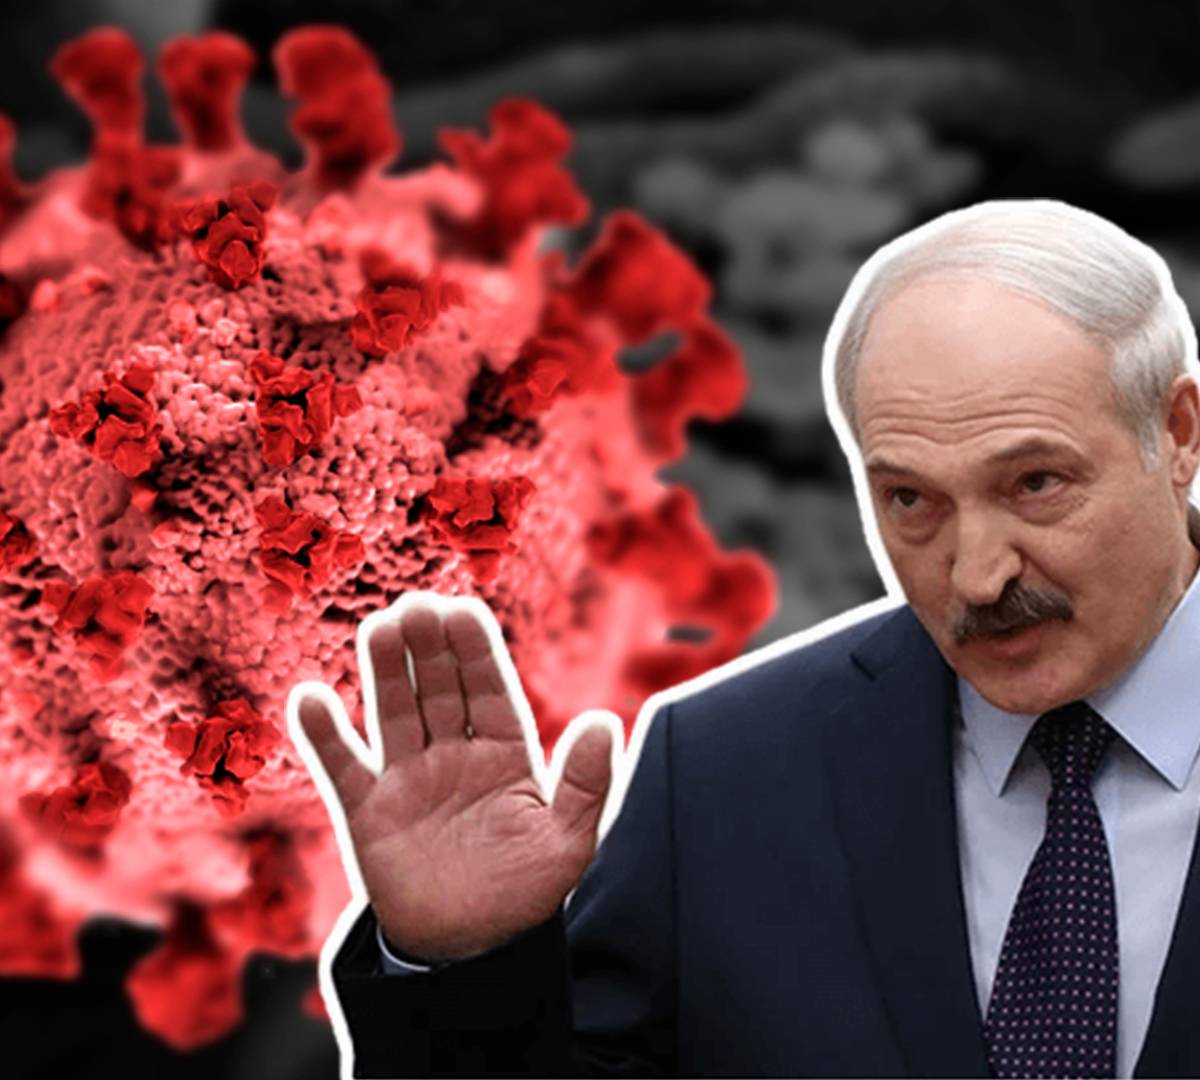 Чего не услышали российские СМИ в послании Александра Лукашенко